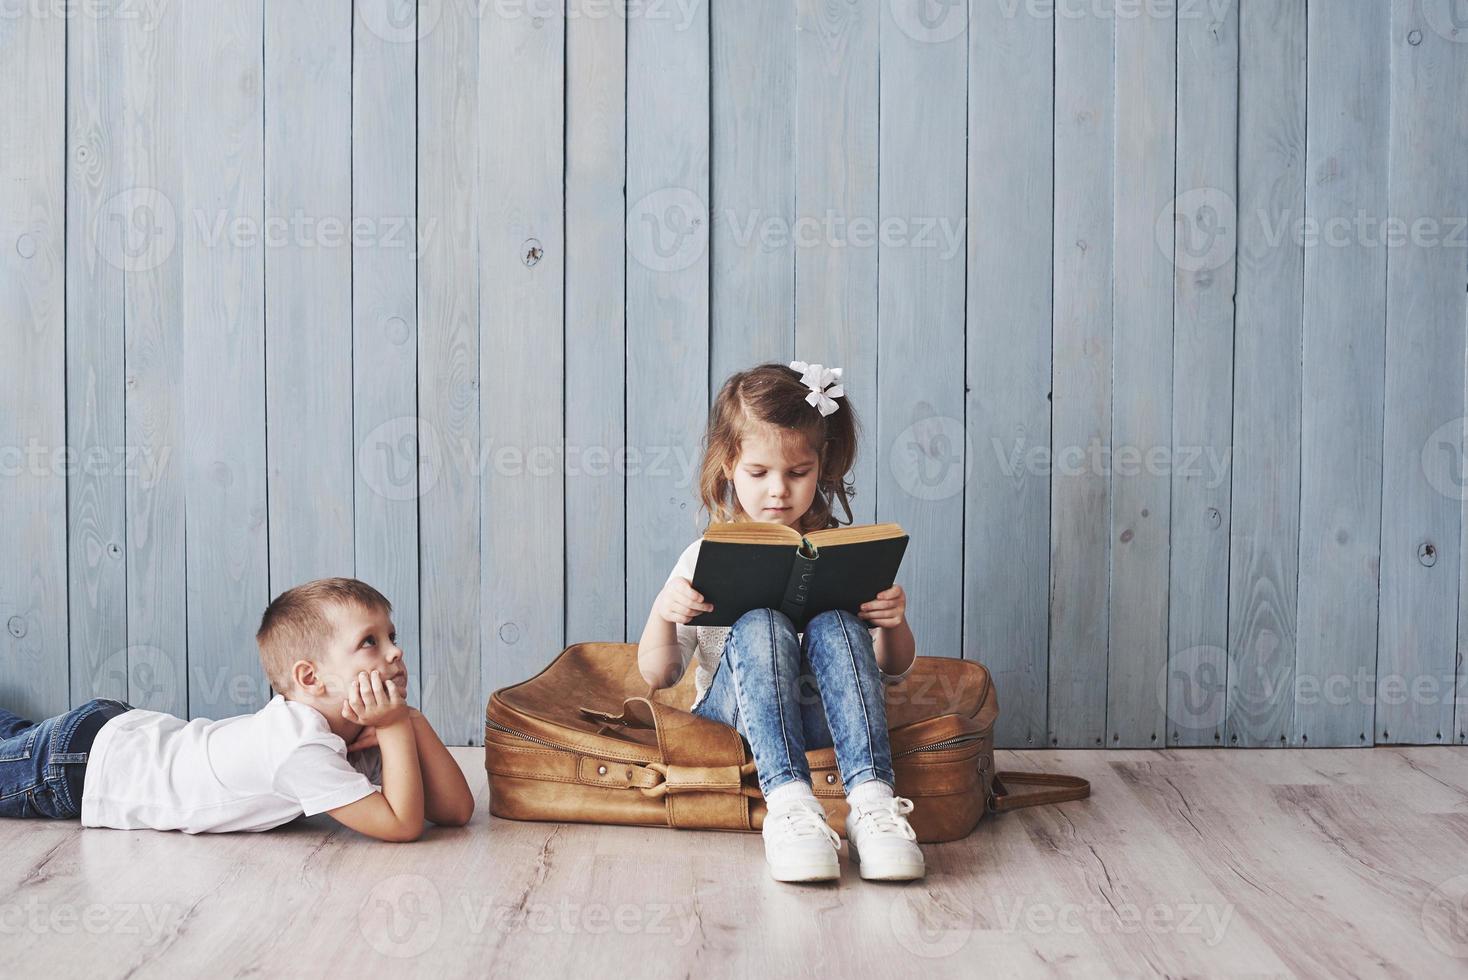 klaar voor grote reizen. gelukkig klein meisje en jongen lezen interessant boek met een grote koffer en glimlachen. reizen, vrijheid en verbeeldingsconcept foto